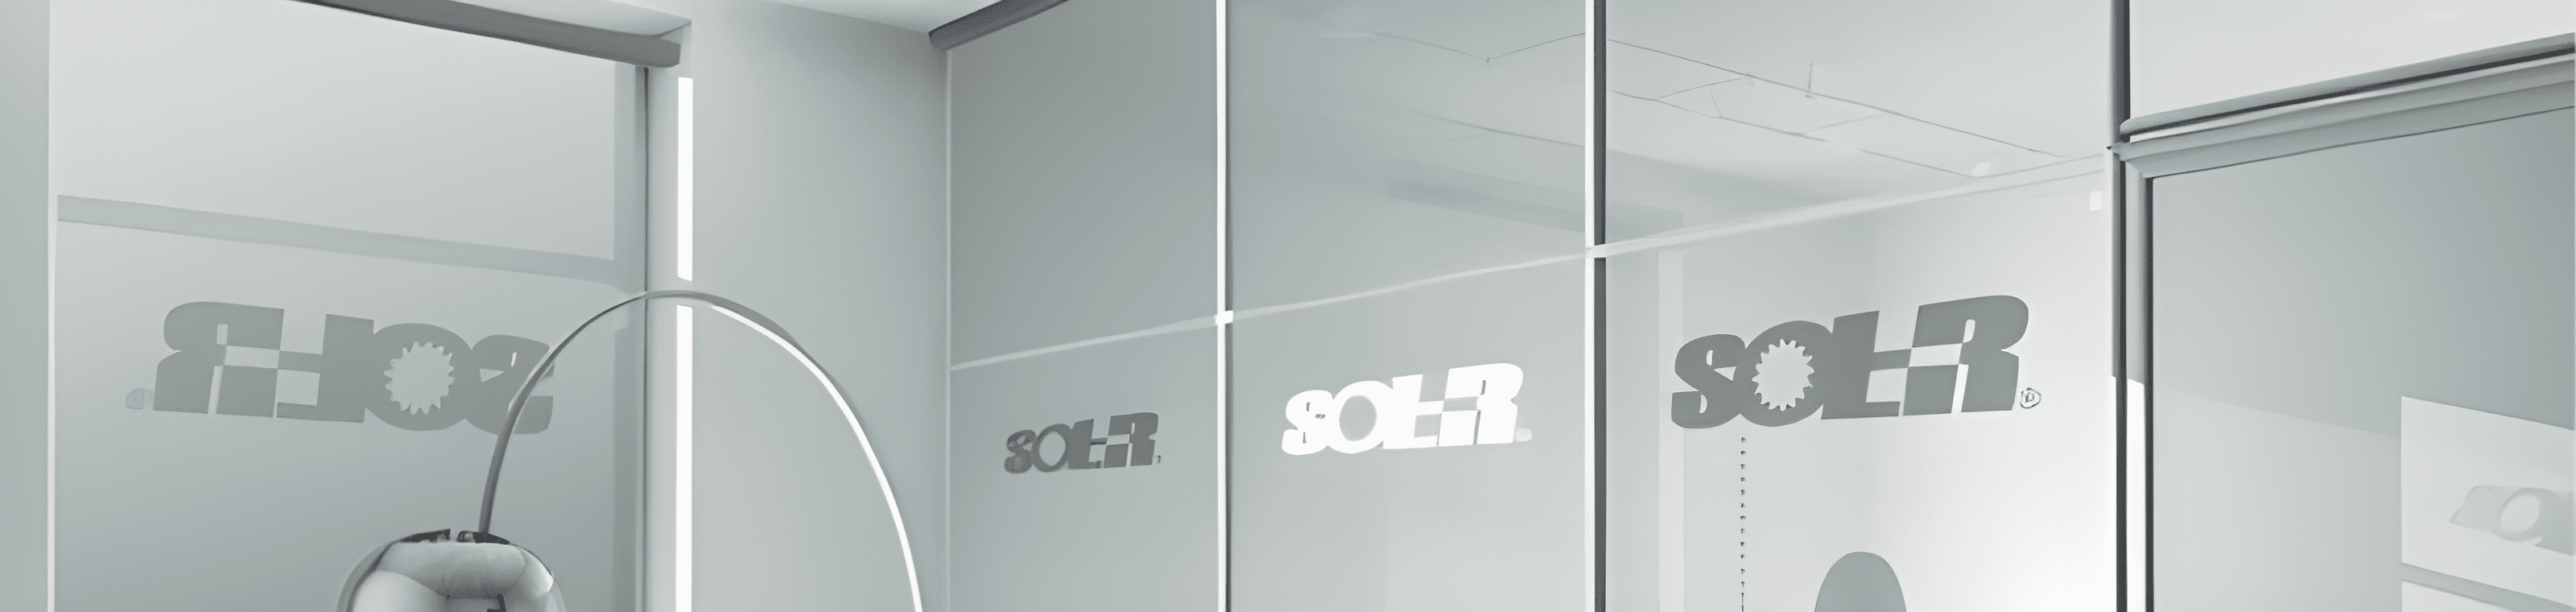 Sol-R Shades Image Printing Banner